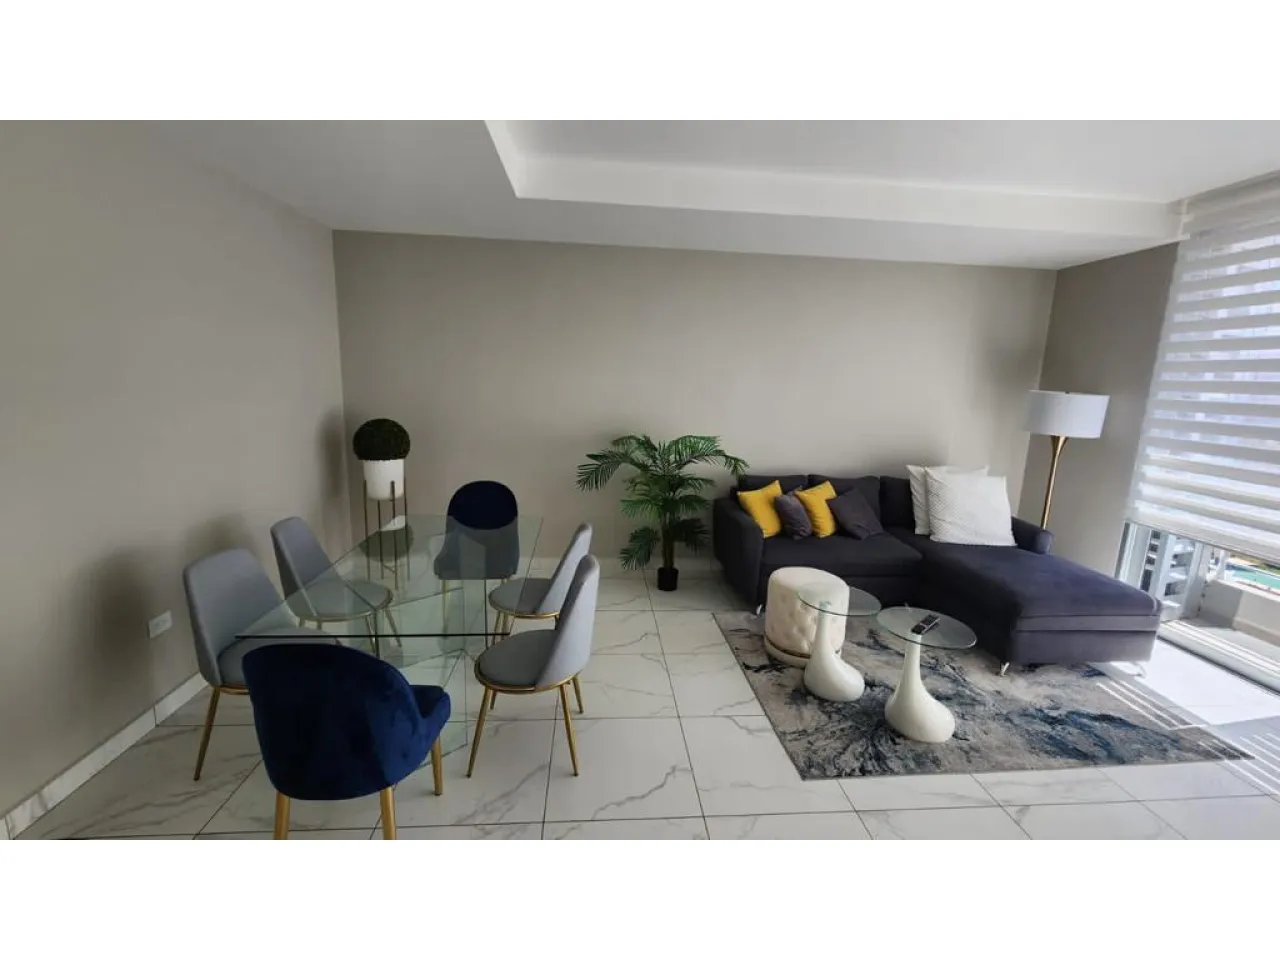 Espacio cuenta con sofá en forma largo de color gris oscuro, lámpara de color blanco con persianas en las ventanas, comedor rectangular de vidrio con 6 sillas